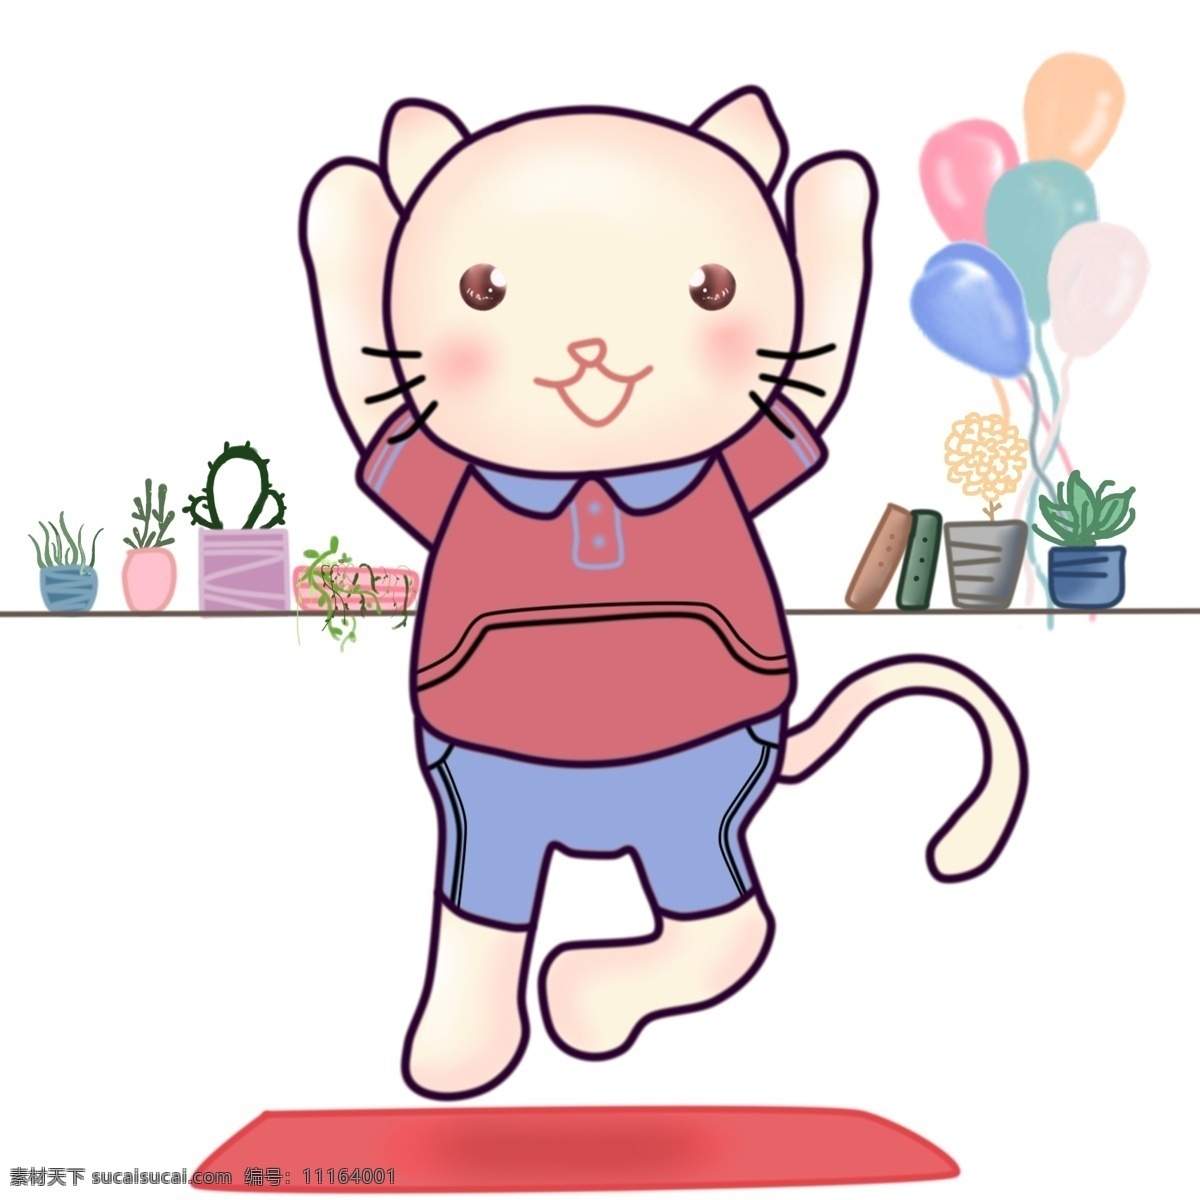 卡通 小 清新 可爱 手绘 瑜伽 猫 商用 元素 运动 气球 小清新 做操猫 小猫 猫咪 简单 做操 瑜伽垫 免抠 矢量 平面设计 运动服 植物 装饰